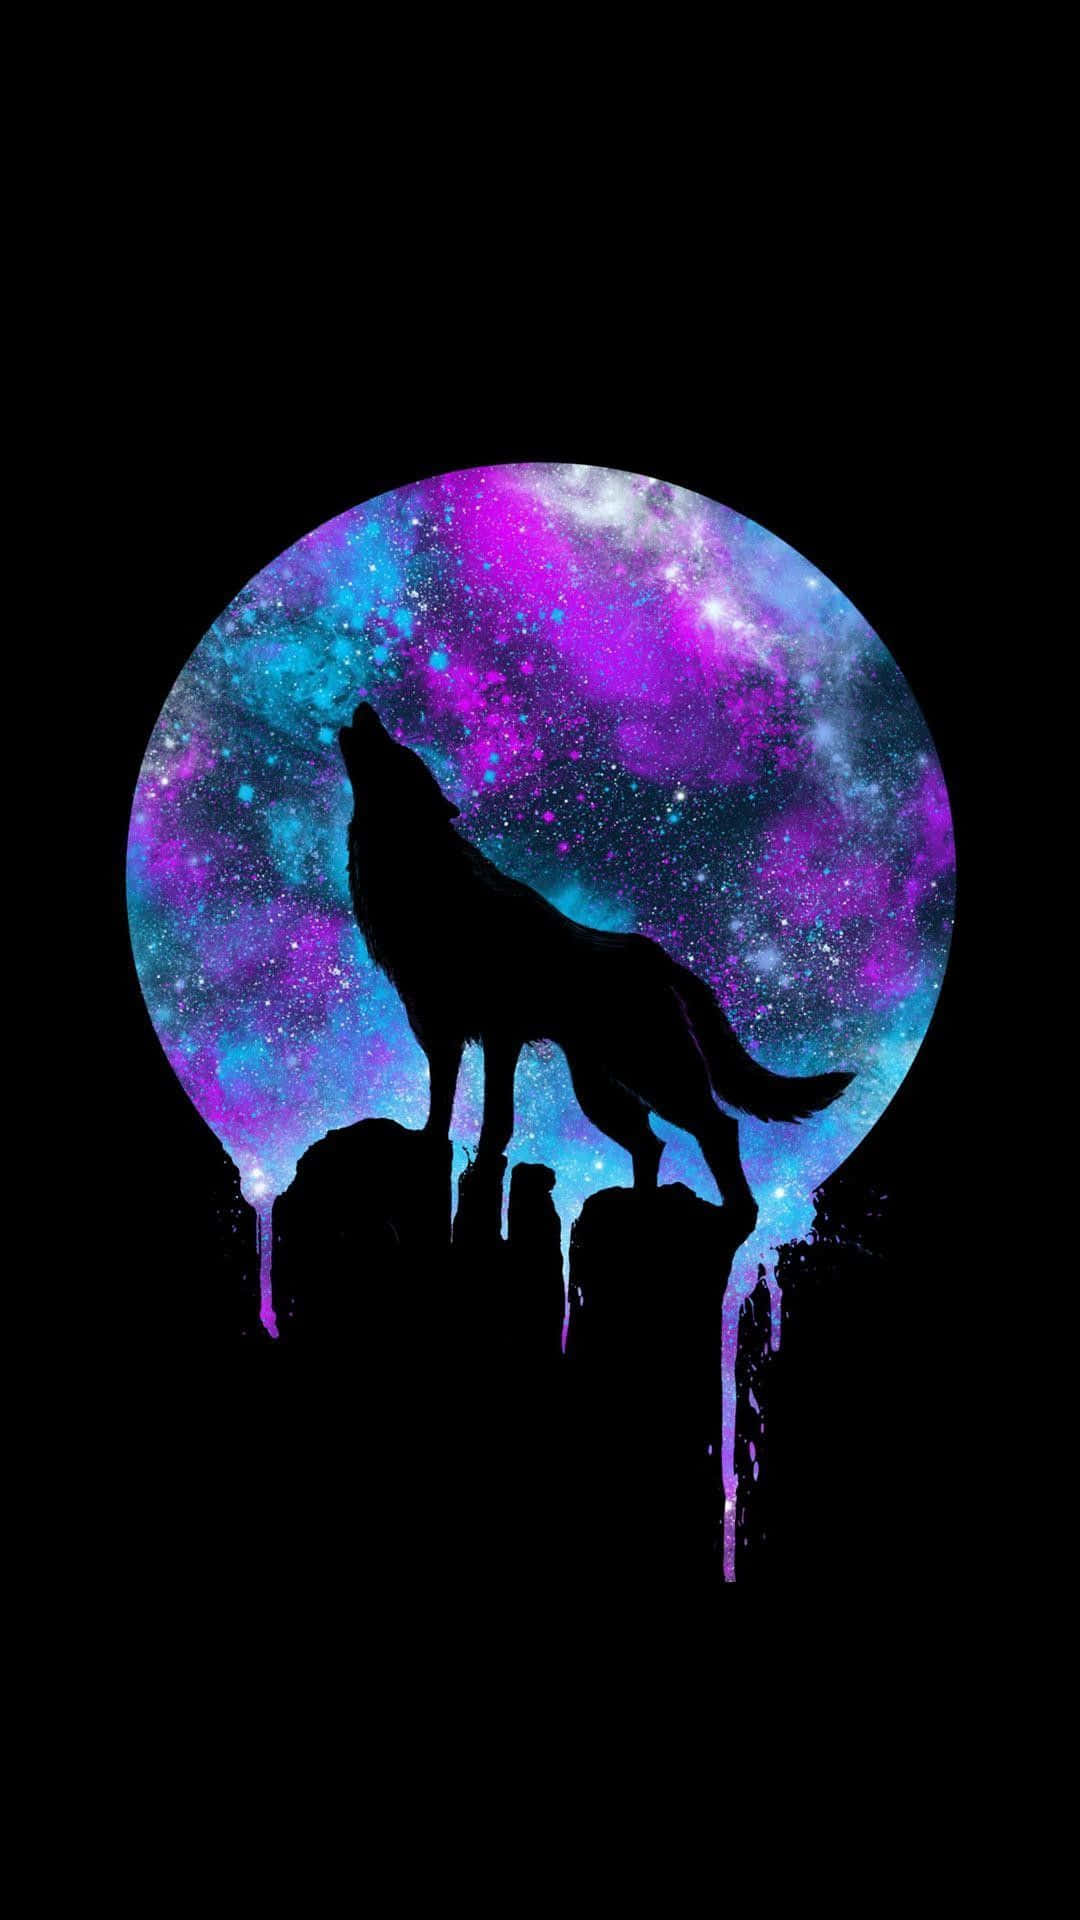 Tjuterpå Vargsmånen (howling At The Wolf Moon) Wallpaper